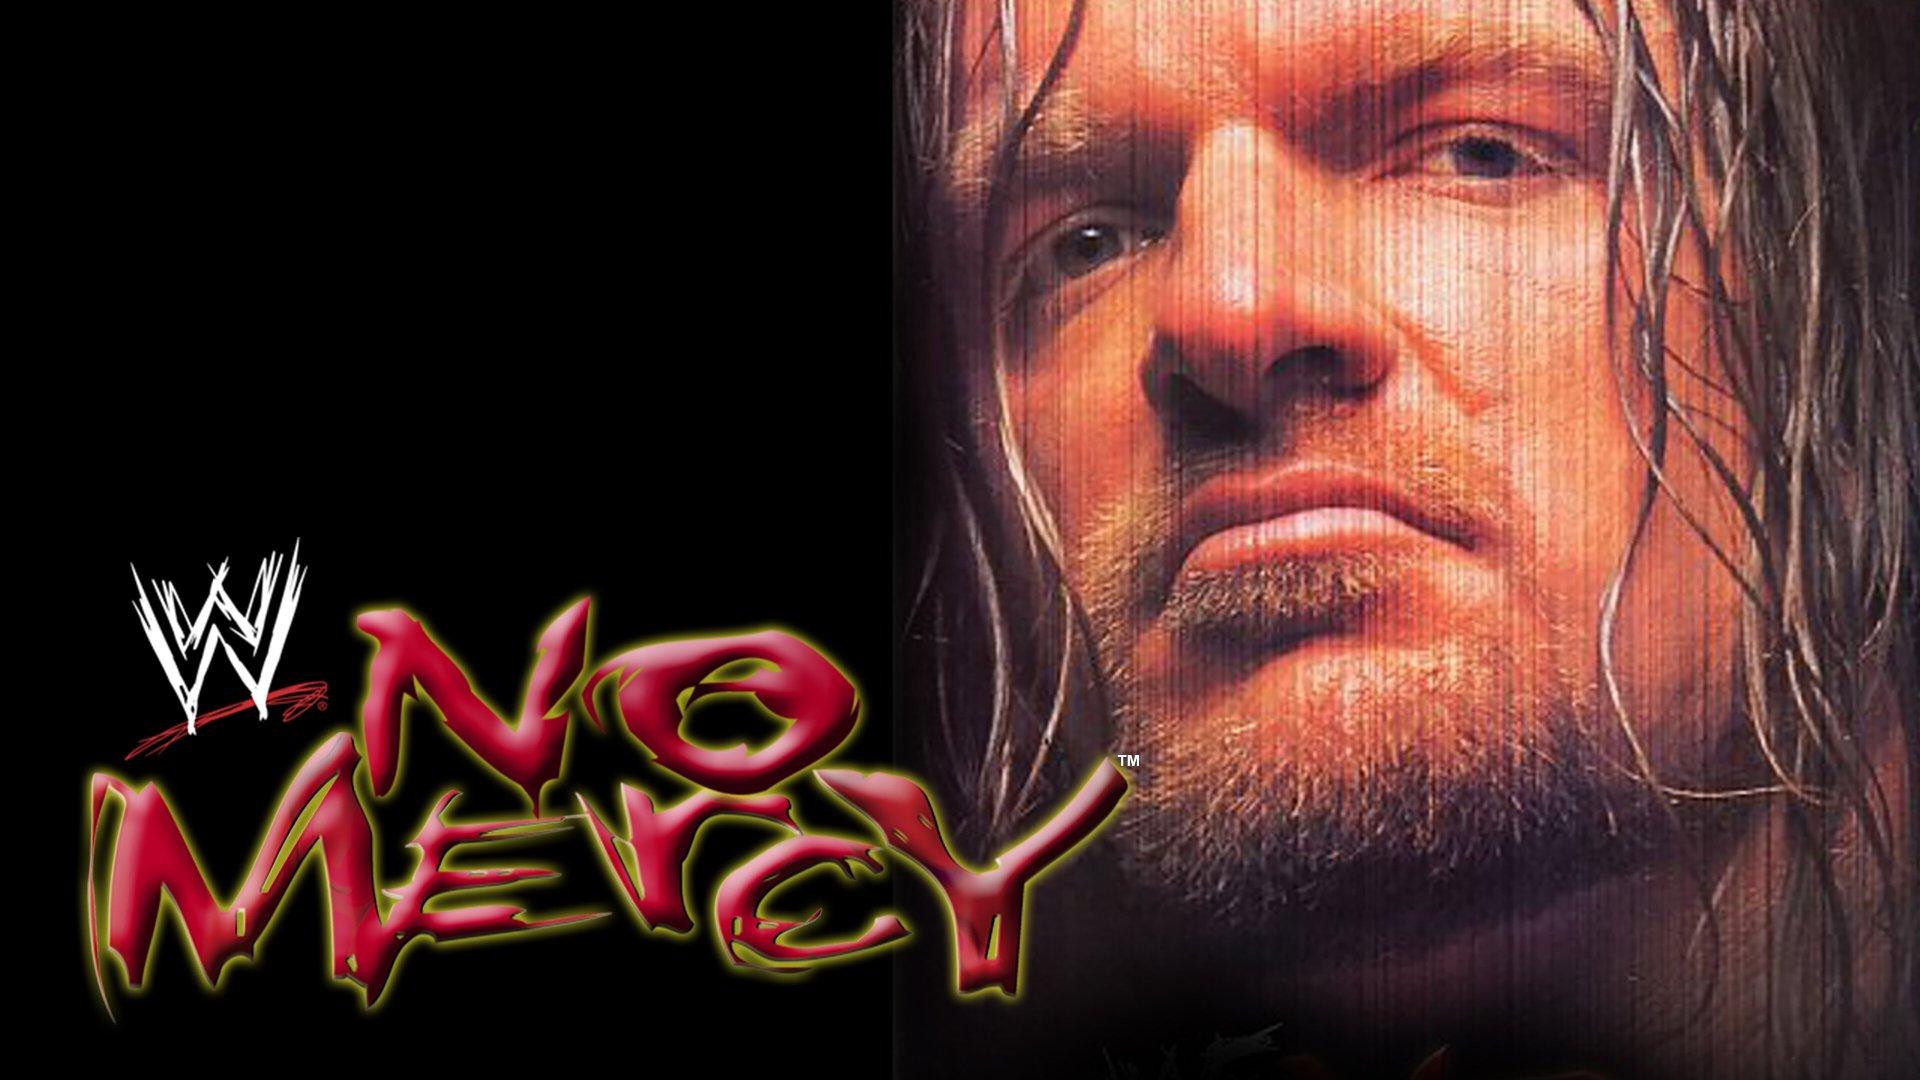 WWF No Mercy 2000